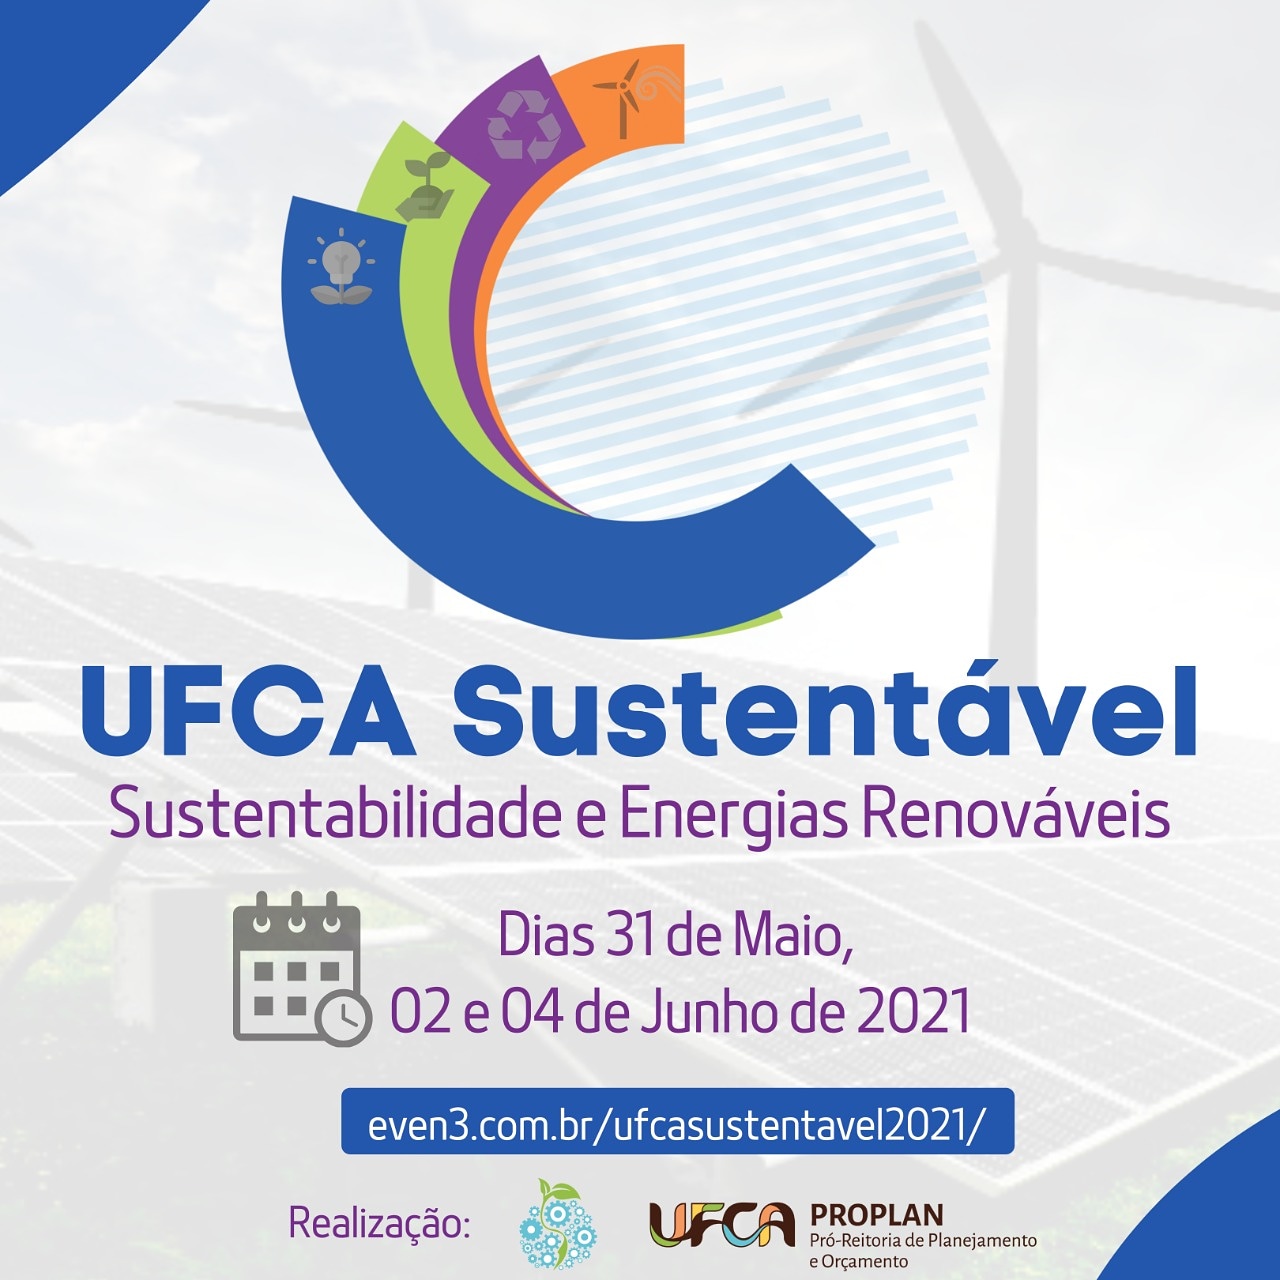 Sustentabilidade - E4 Brasil